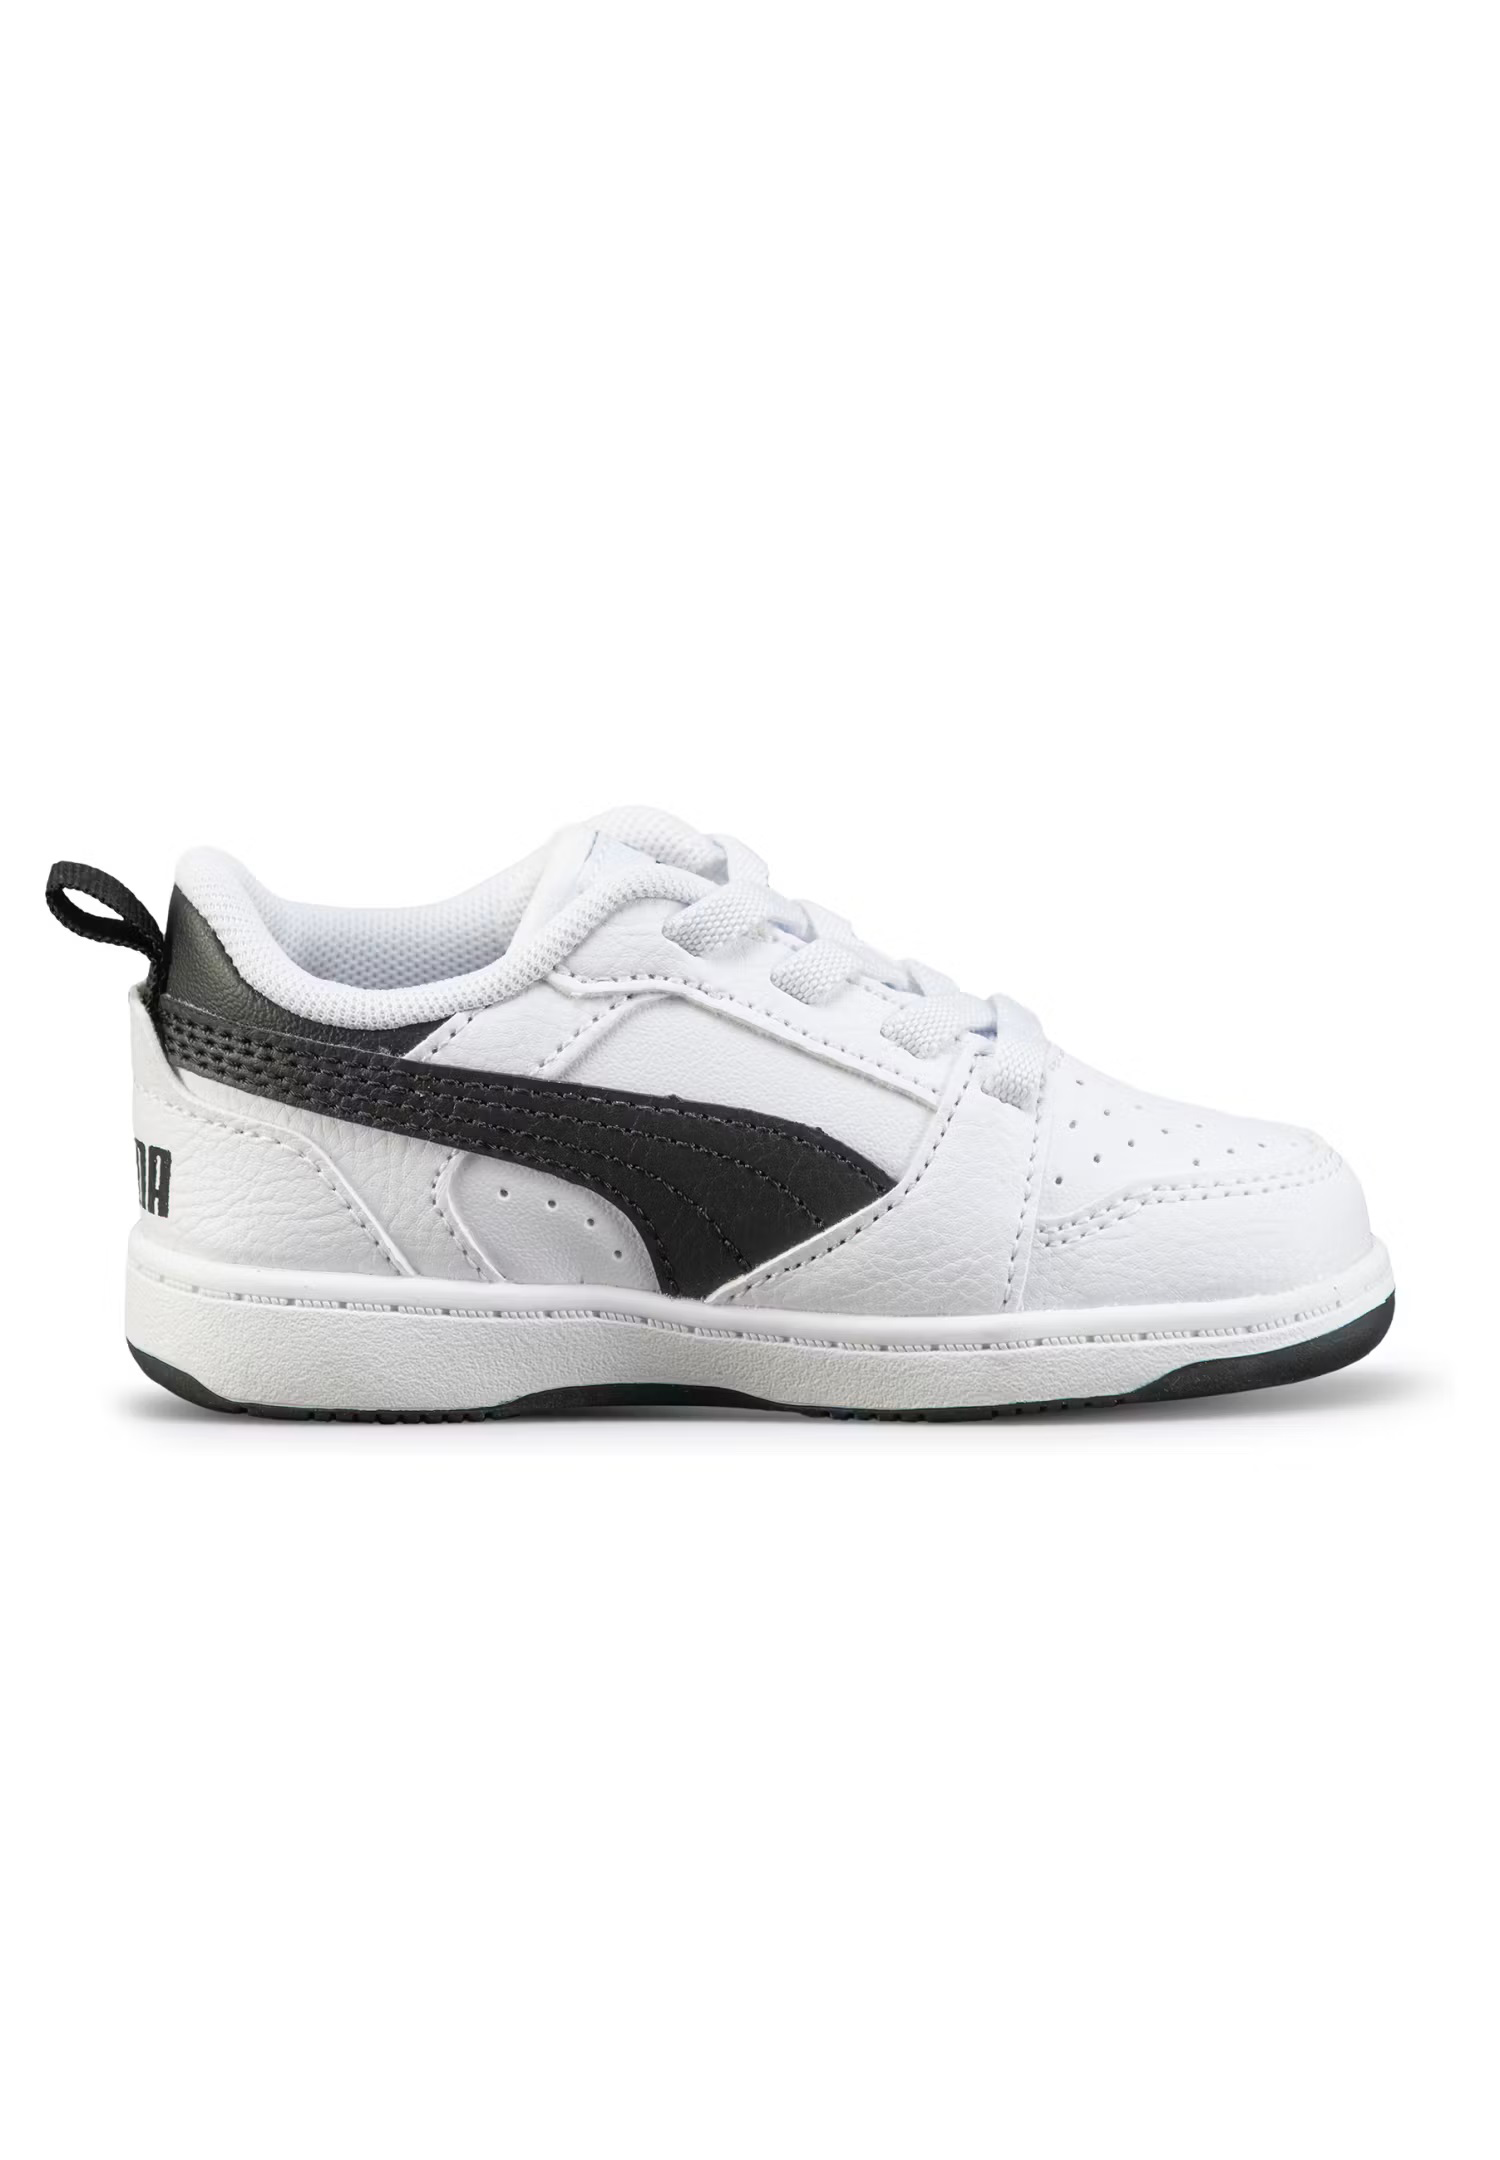 Puma Rebound V6 Lo AC PS Unisex Kinder Sneaker 396742 02 weiß/schwarz 